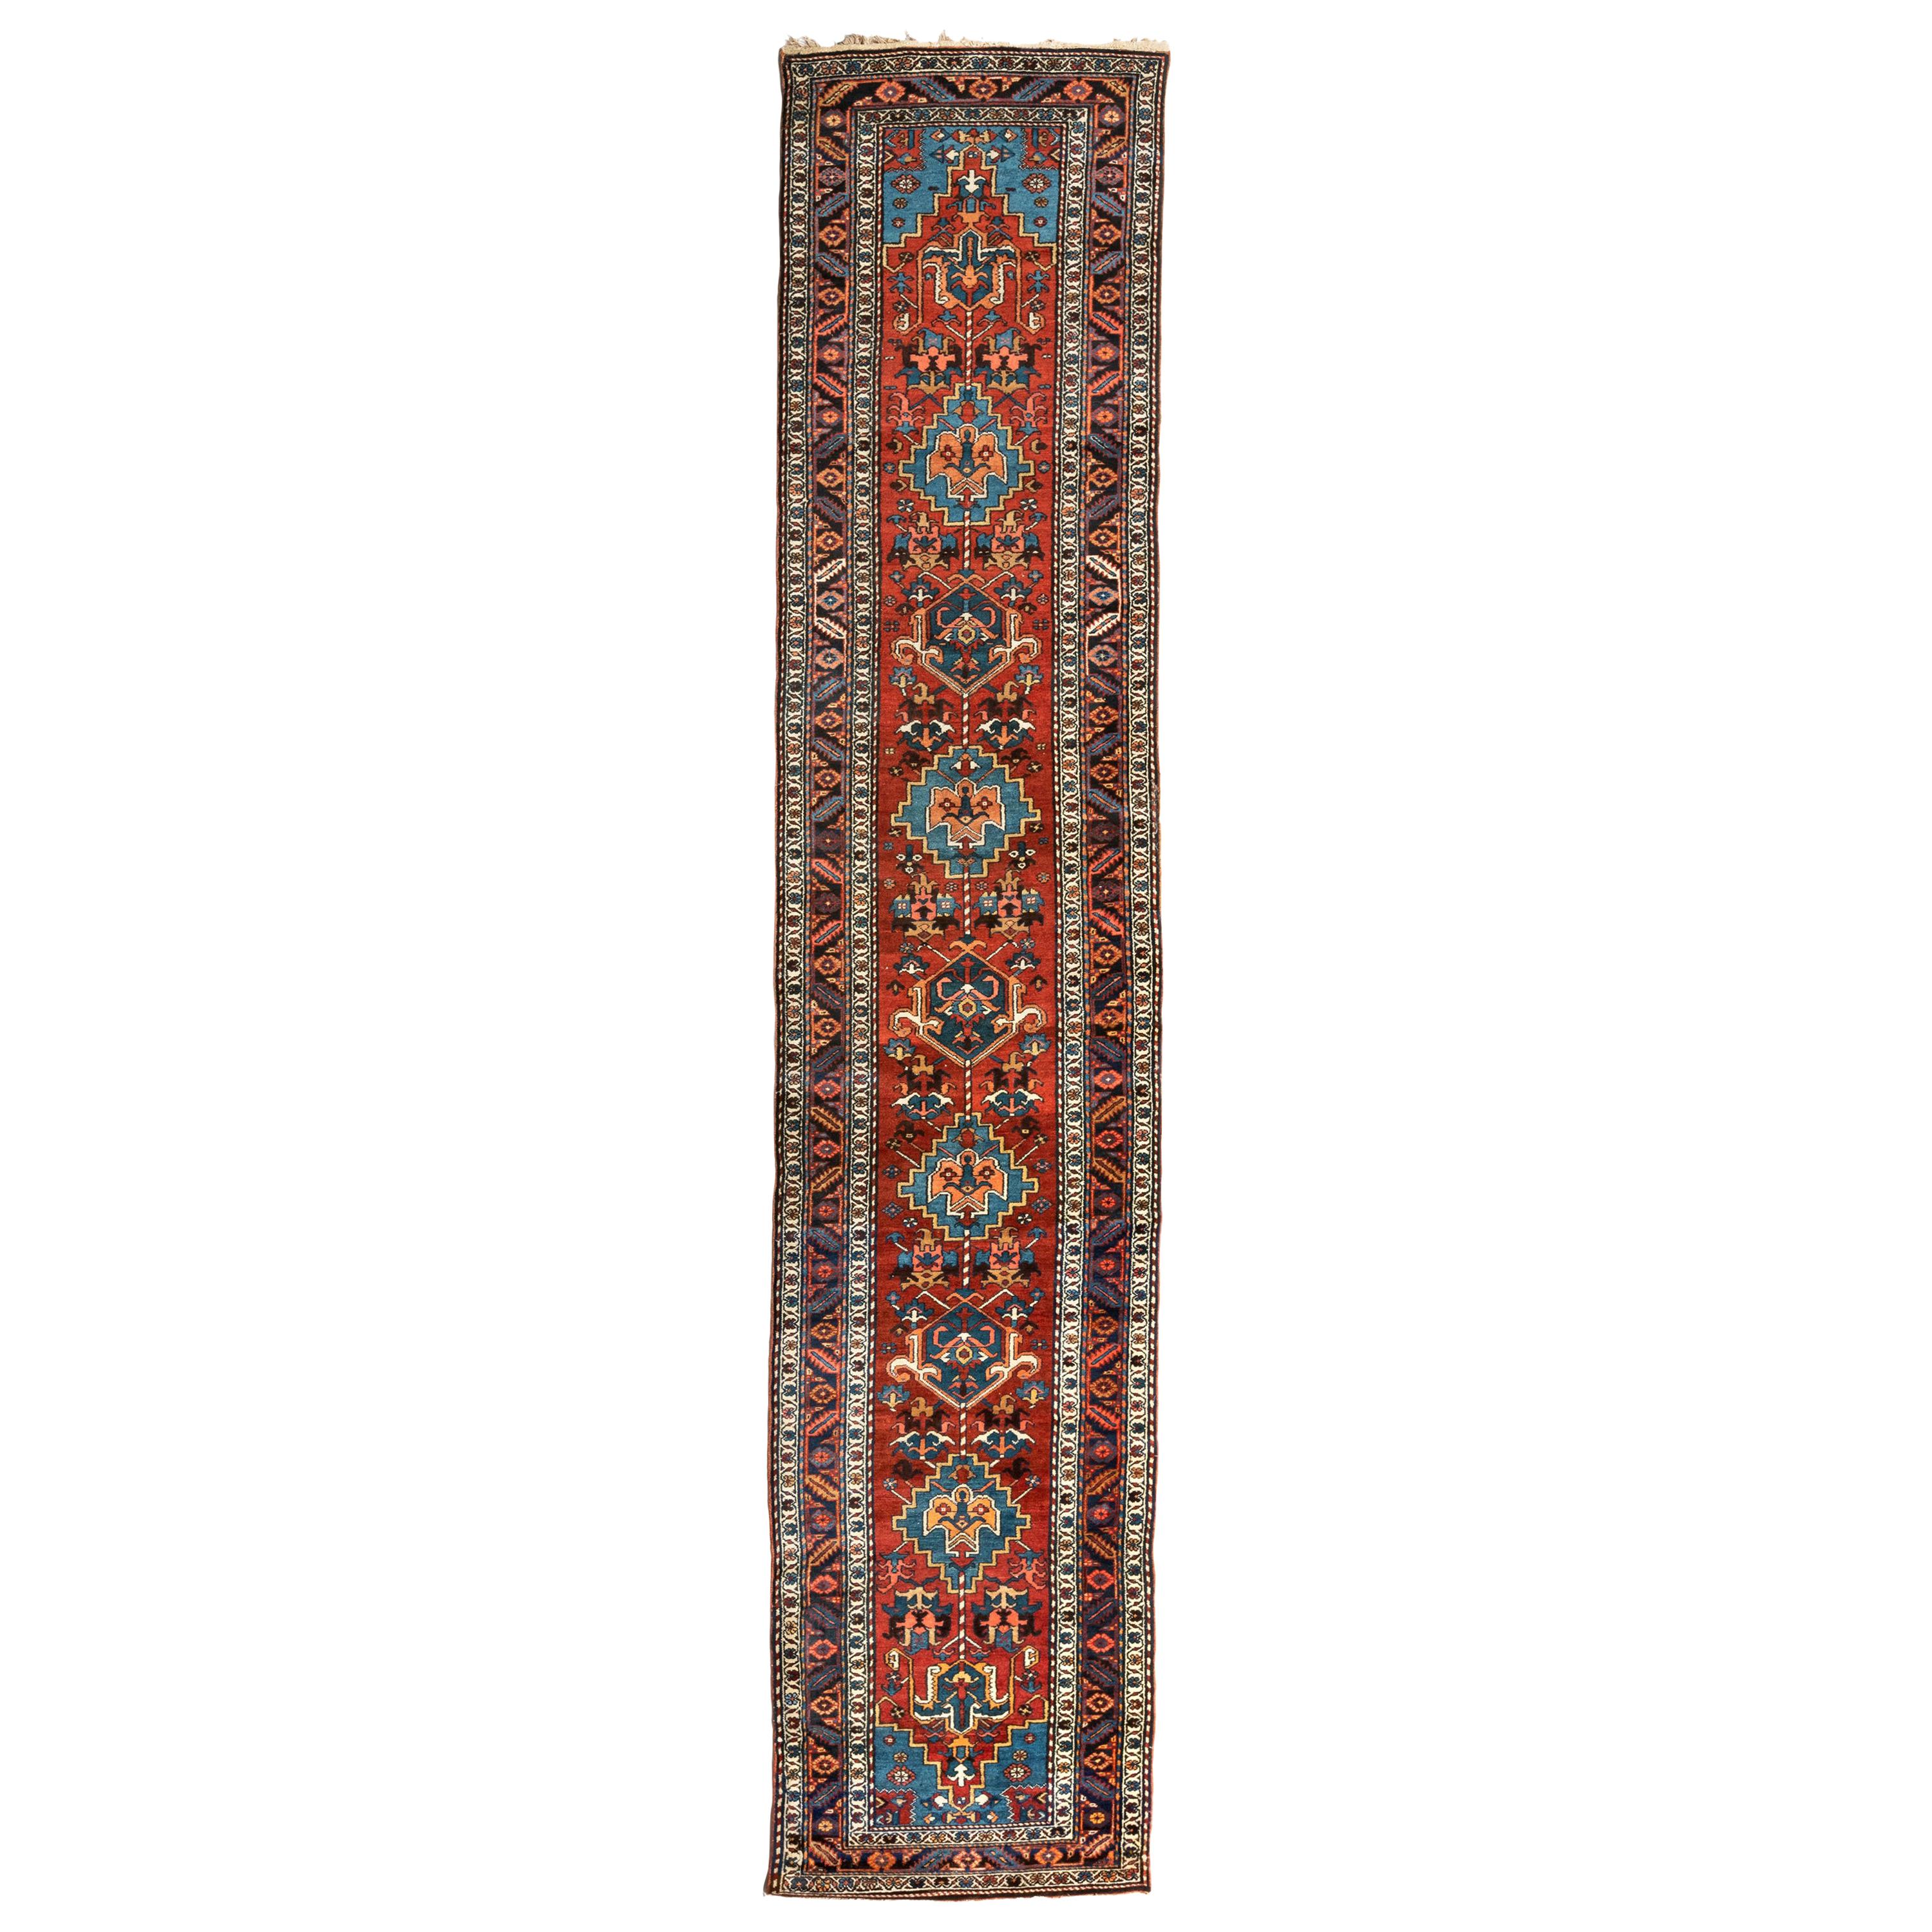 Antique tapis persan bleu bourgogne géométrique Heriz circa 1920-1930s